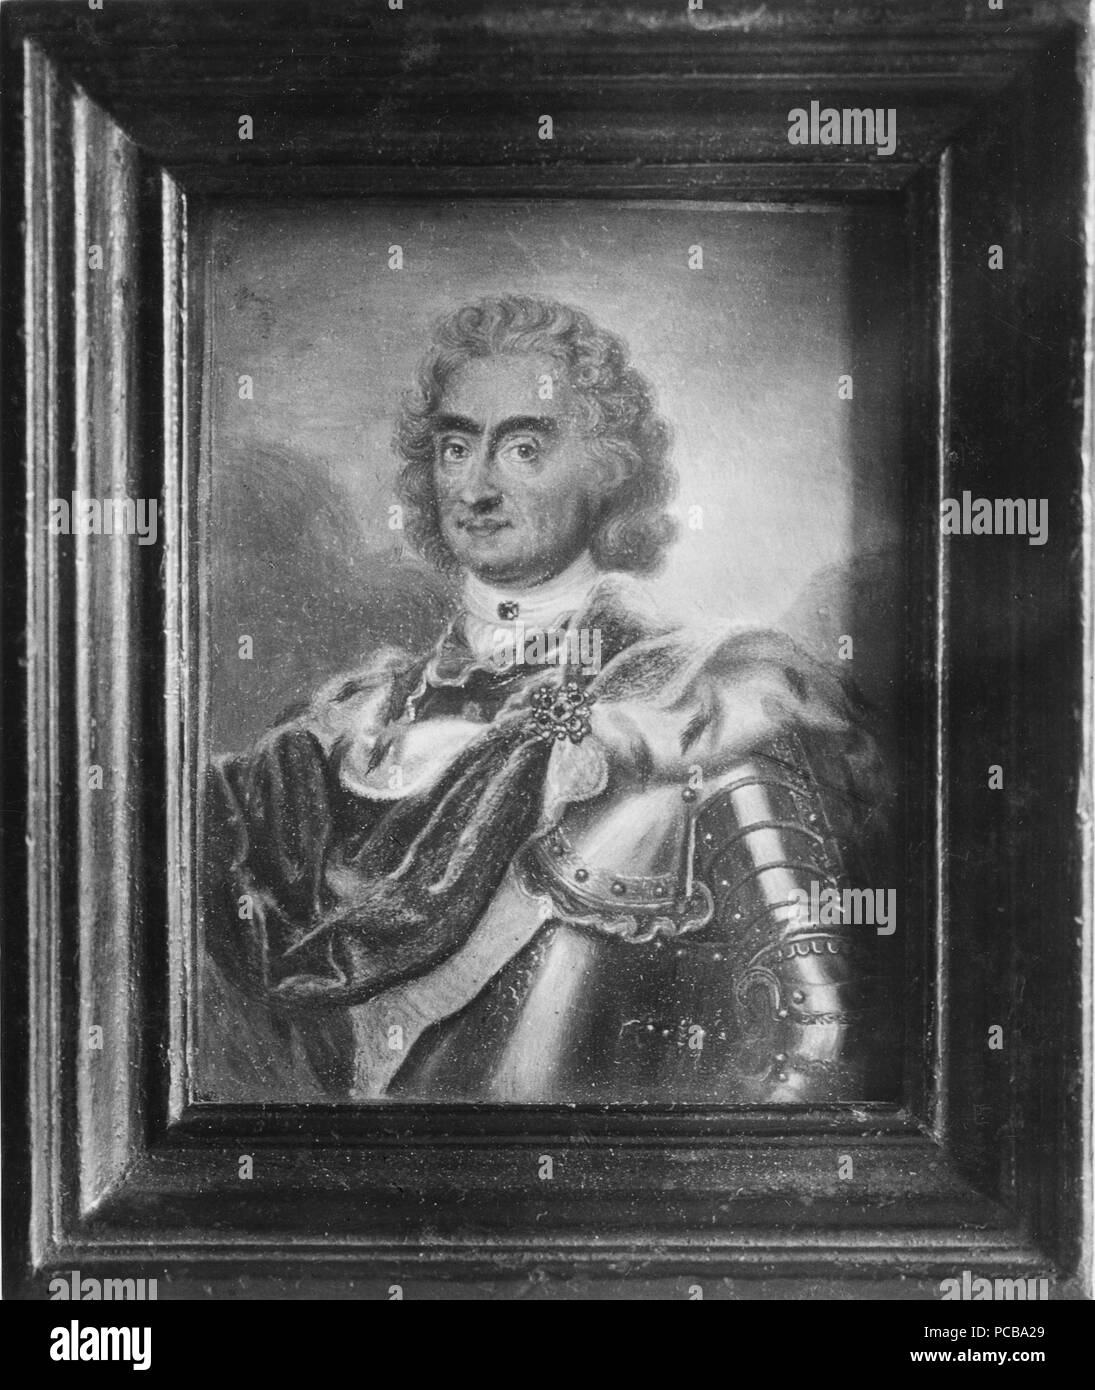 10 août II den starke, 1670-1733, kurfurste av Sachsen, kung av Polen - Nationalmuseum - 28518 Banque D'Images